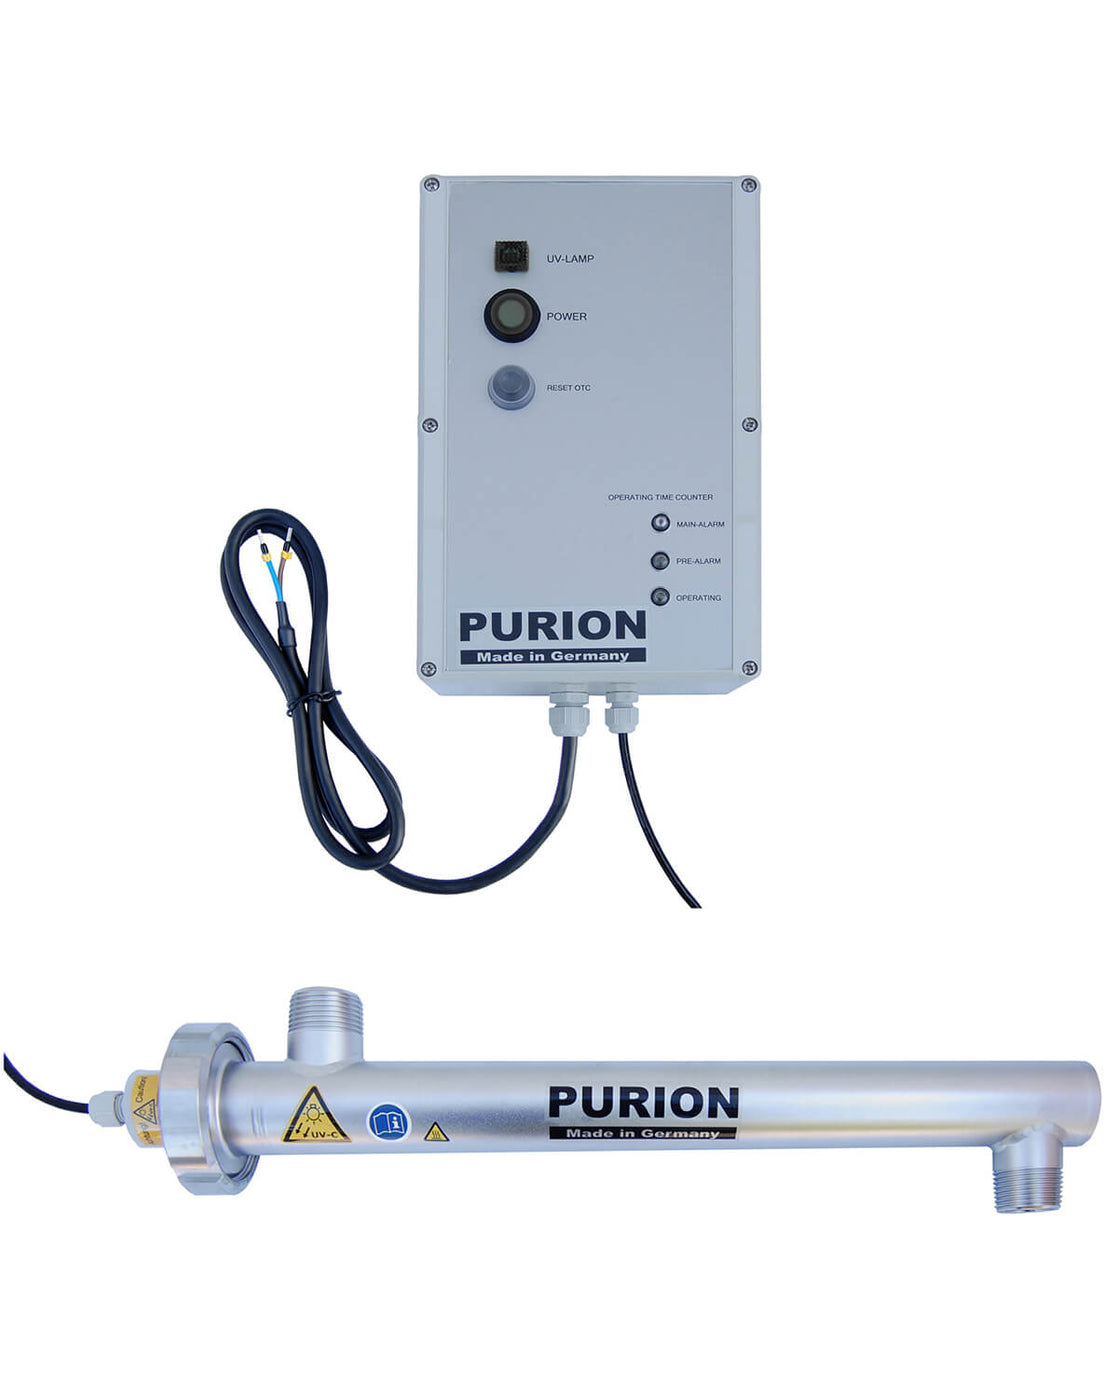 PURION 1000 12/24 V DC OTC der PURION GmbH für Wasserautarkie und Wasserdesinfektion.